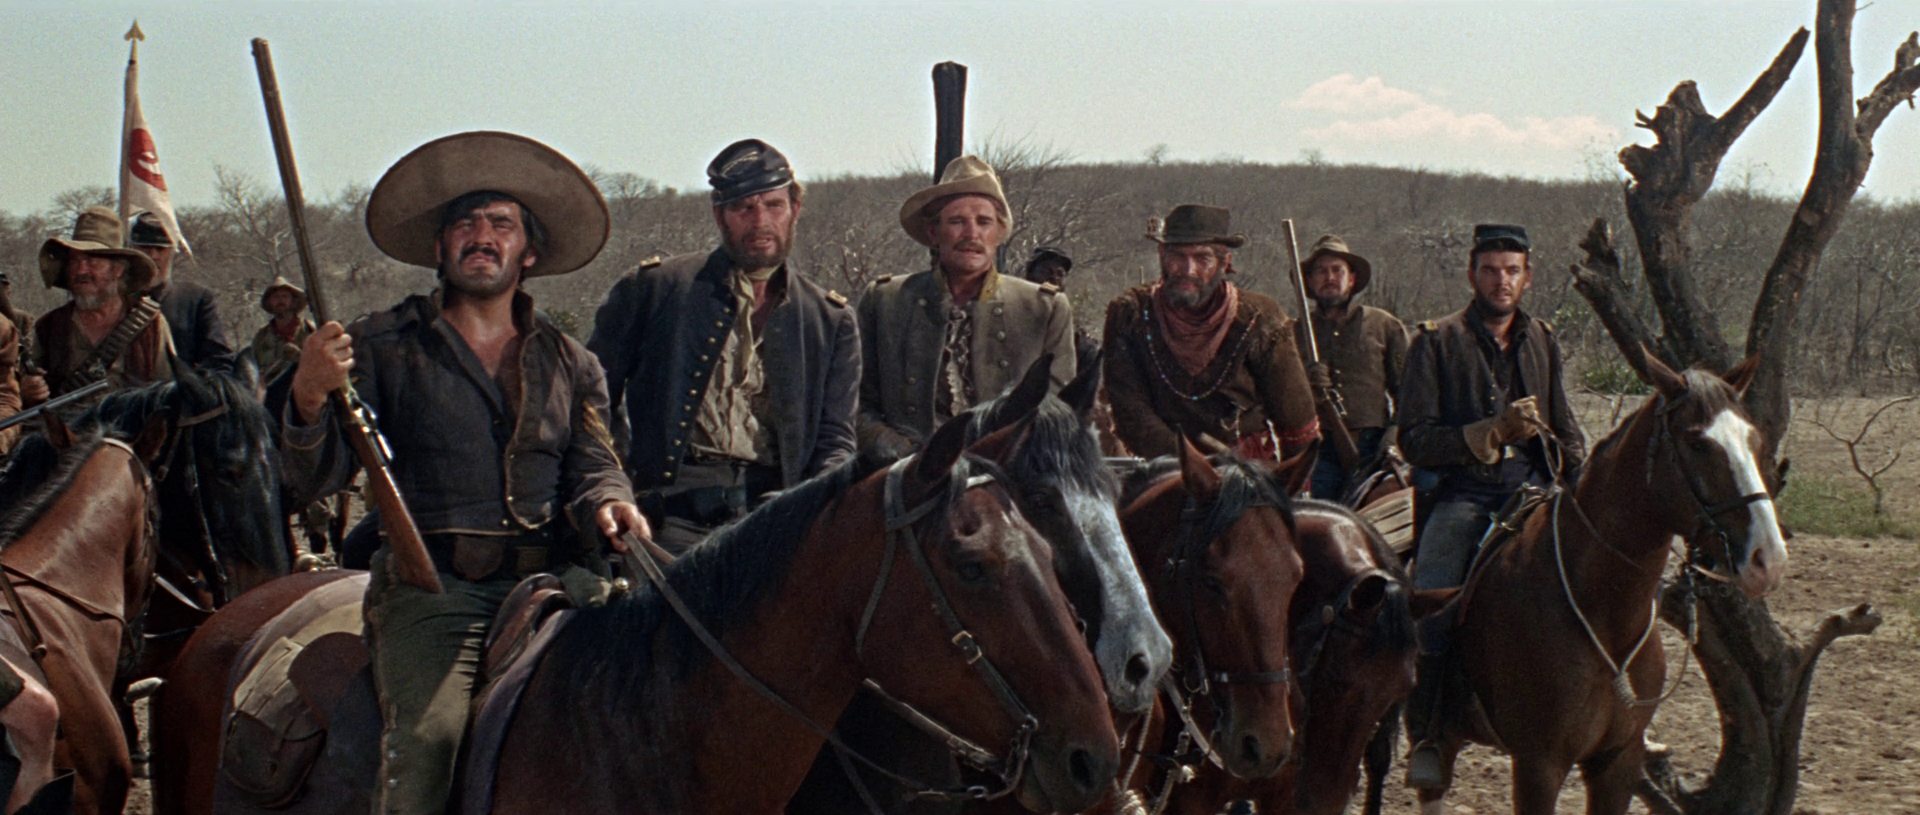 Mario Adorf, Charlton Heston, Richard Harris, James Coburn und andere als Kavalleristen zu Pferd in trist-trockener Umgebung.